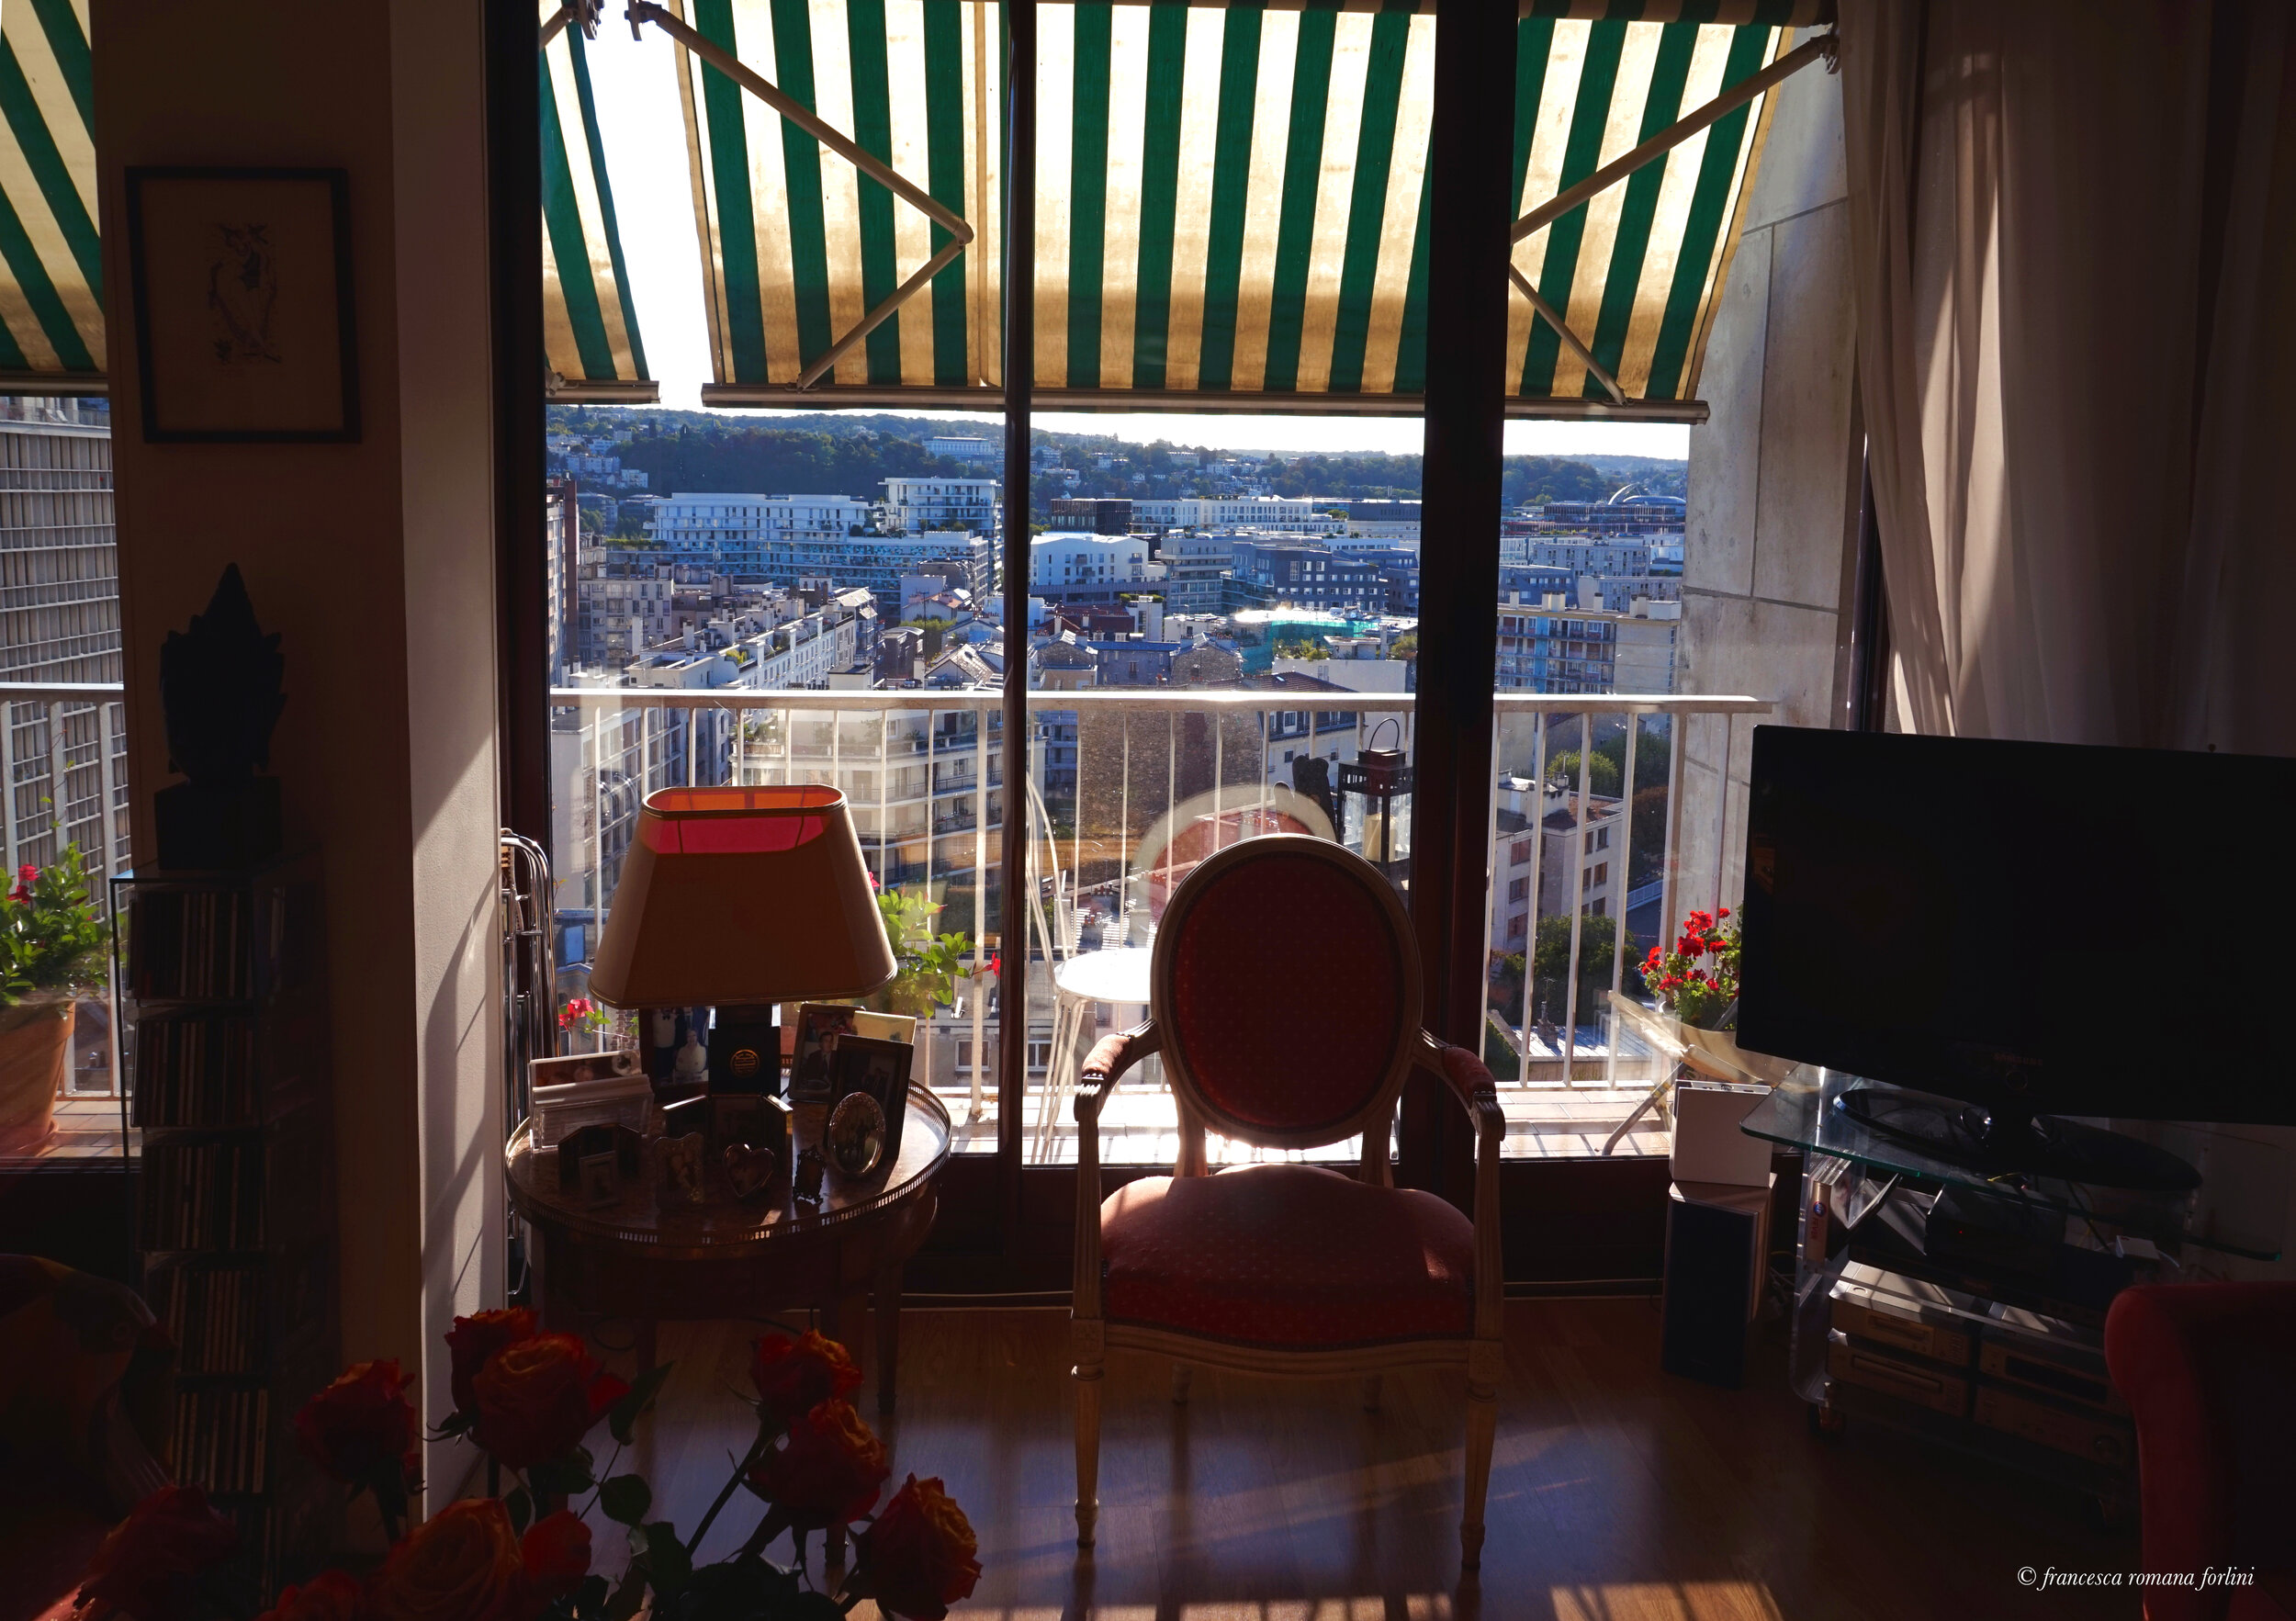  Salon with a view. Résidence Salmson at Point-du-Jour, Paris. 2019 